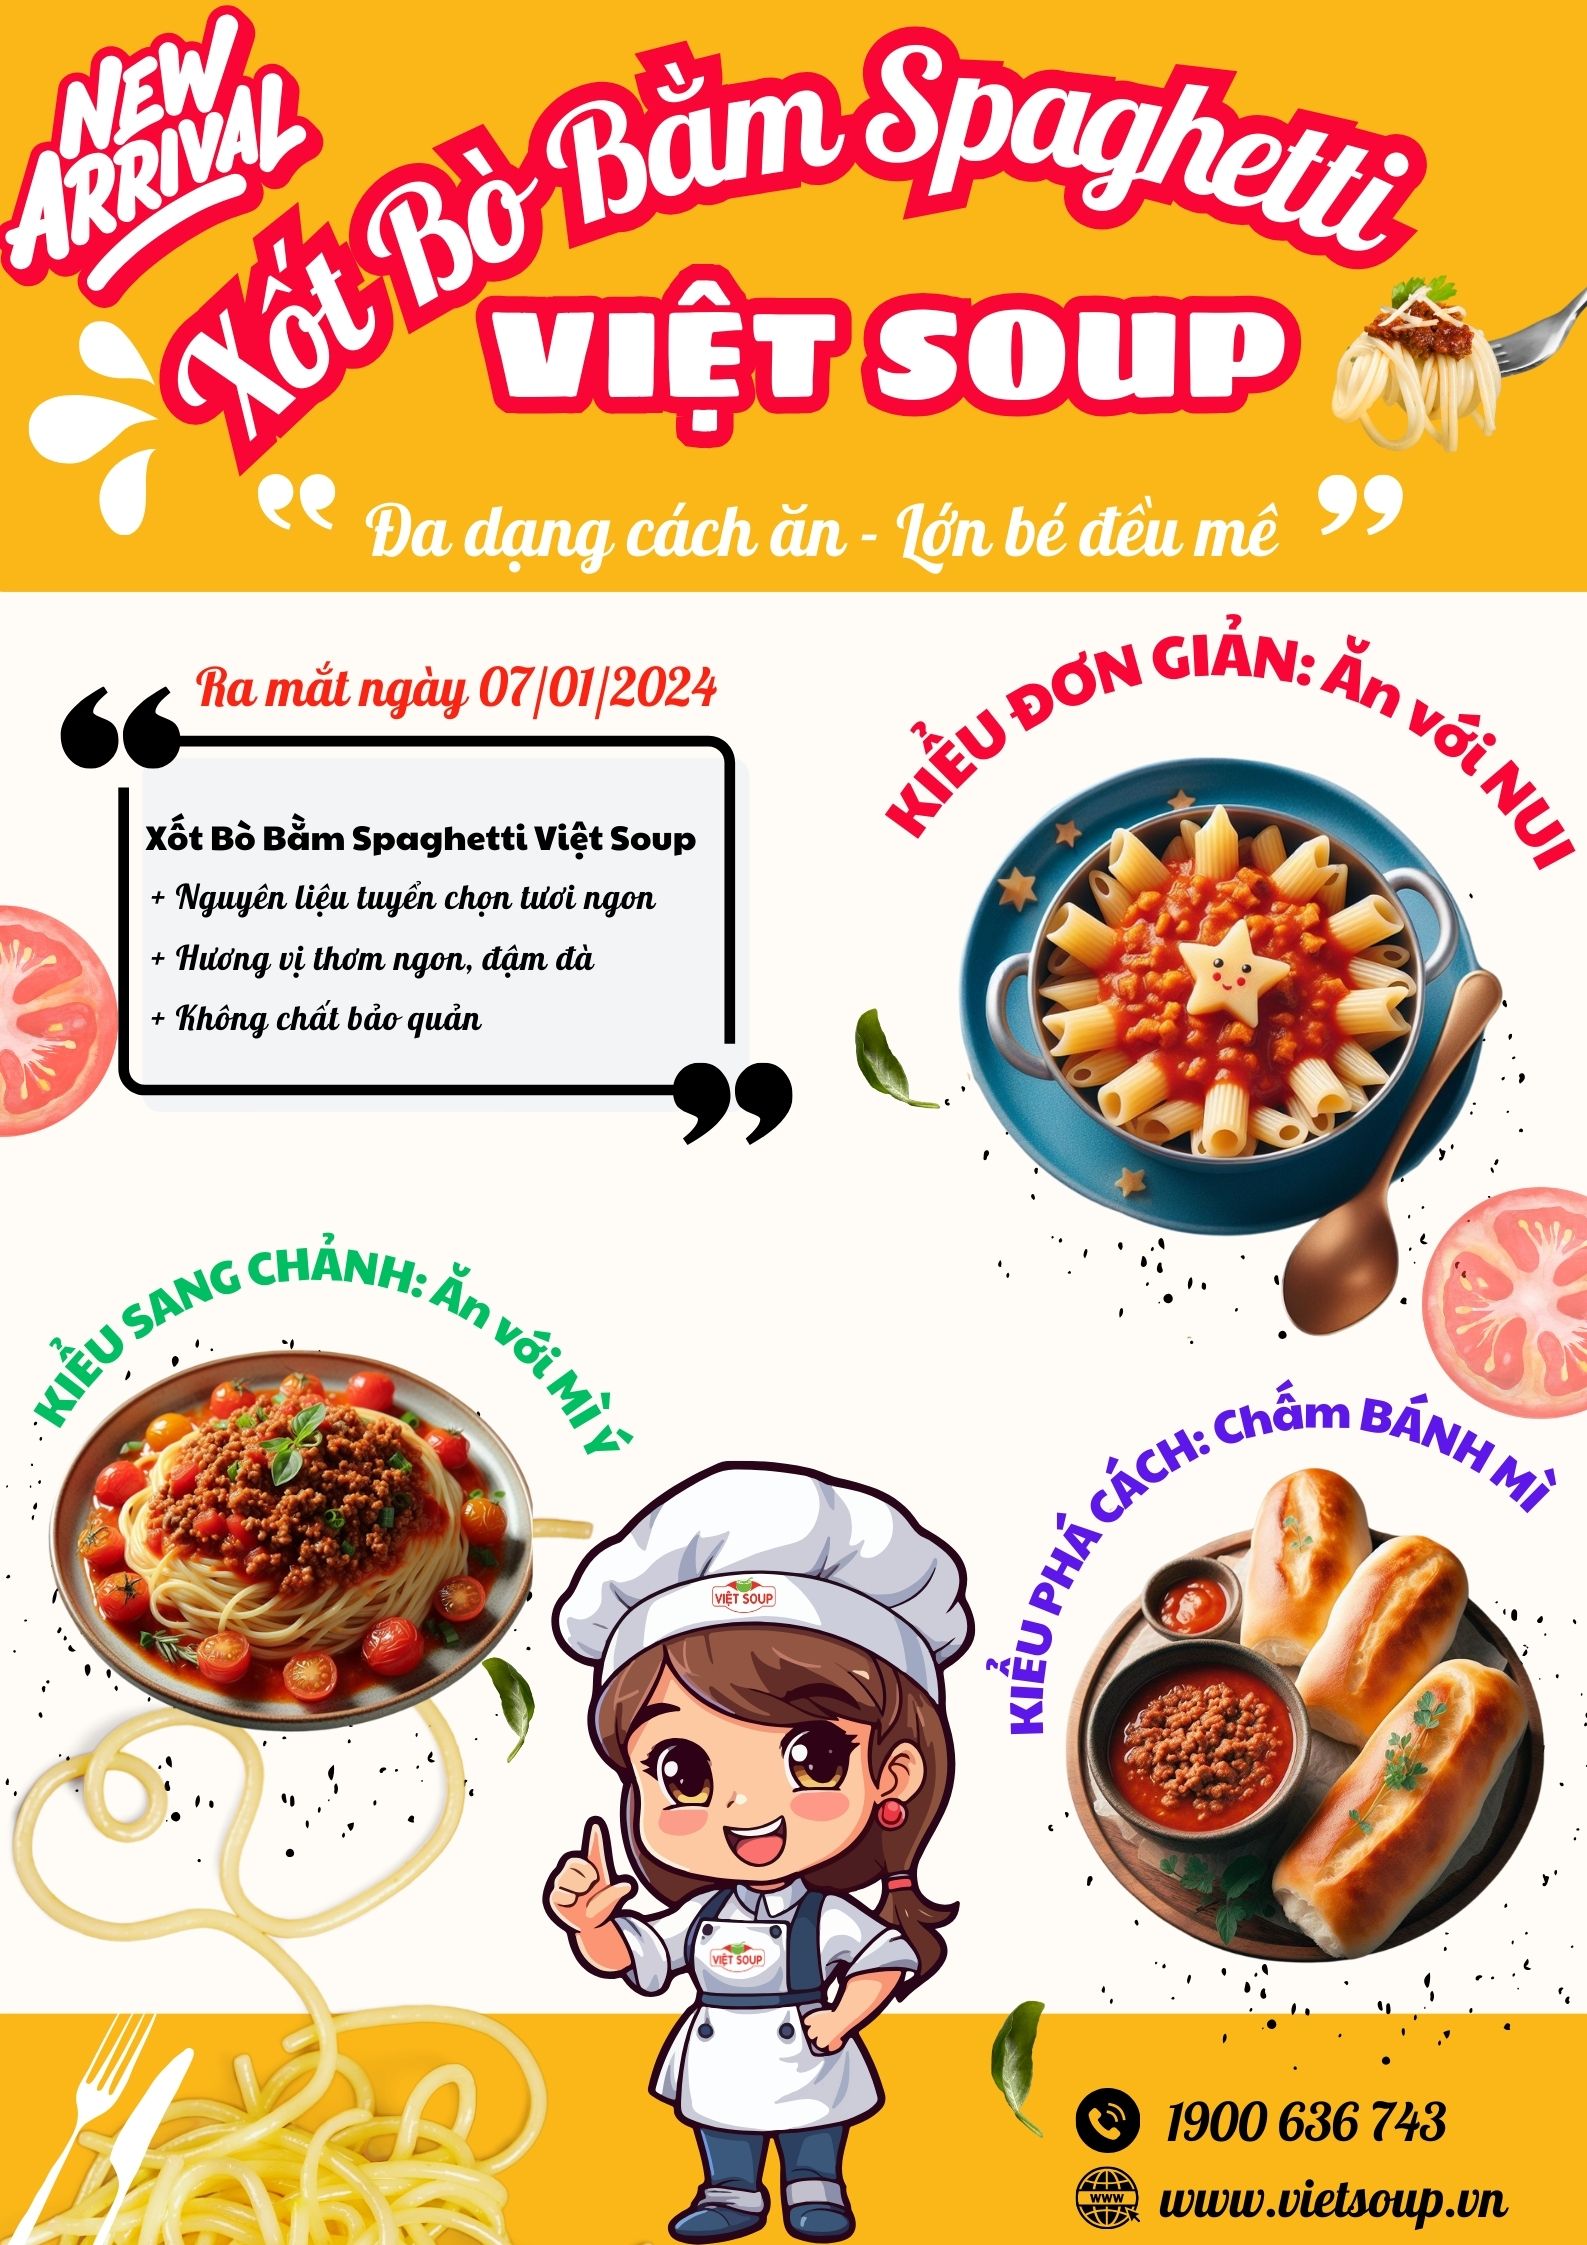 Cháo Dinh Dưỡng Việt Soup Ra Mắt Xốt Bò Bằm Spaghetti